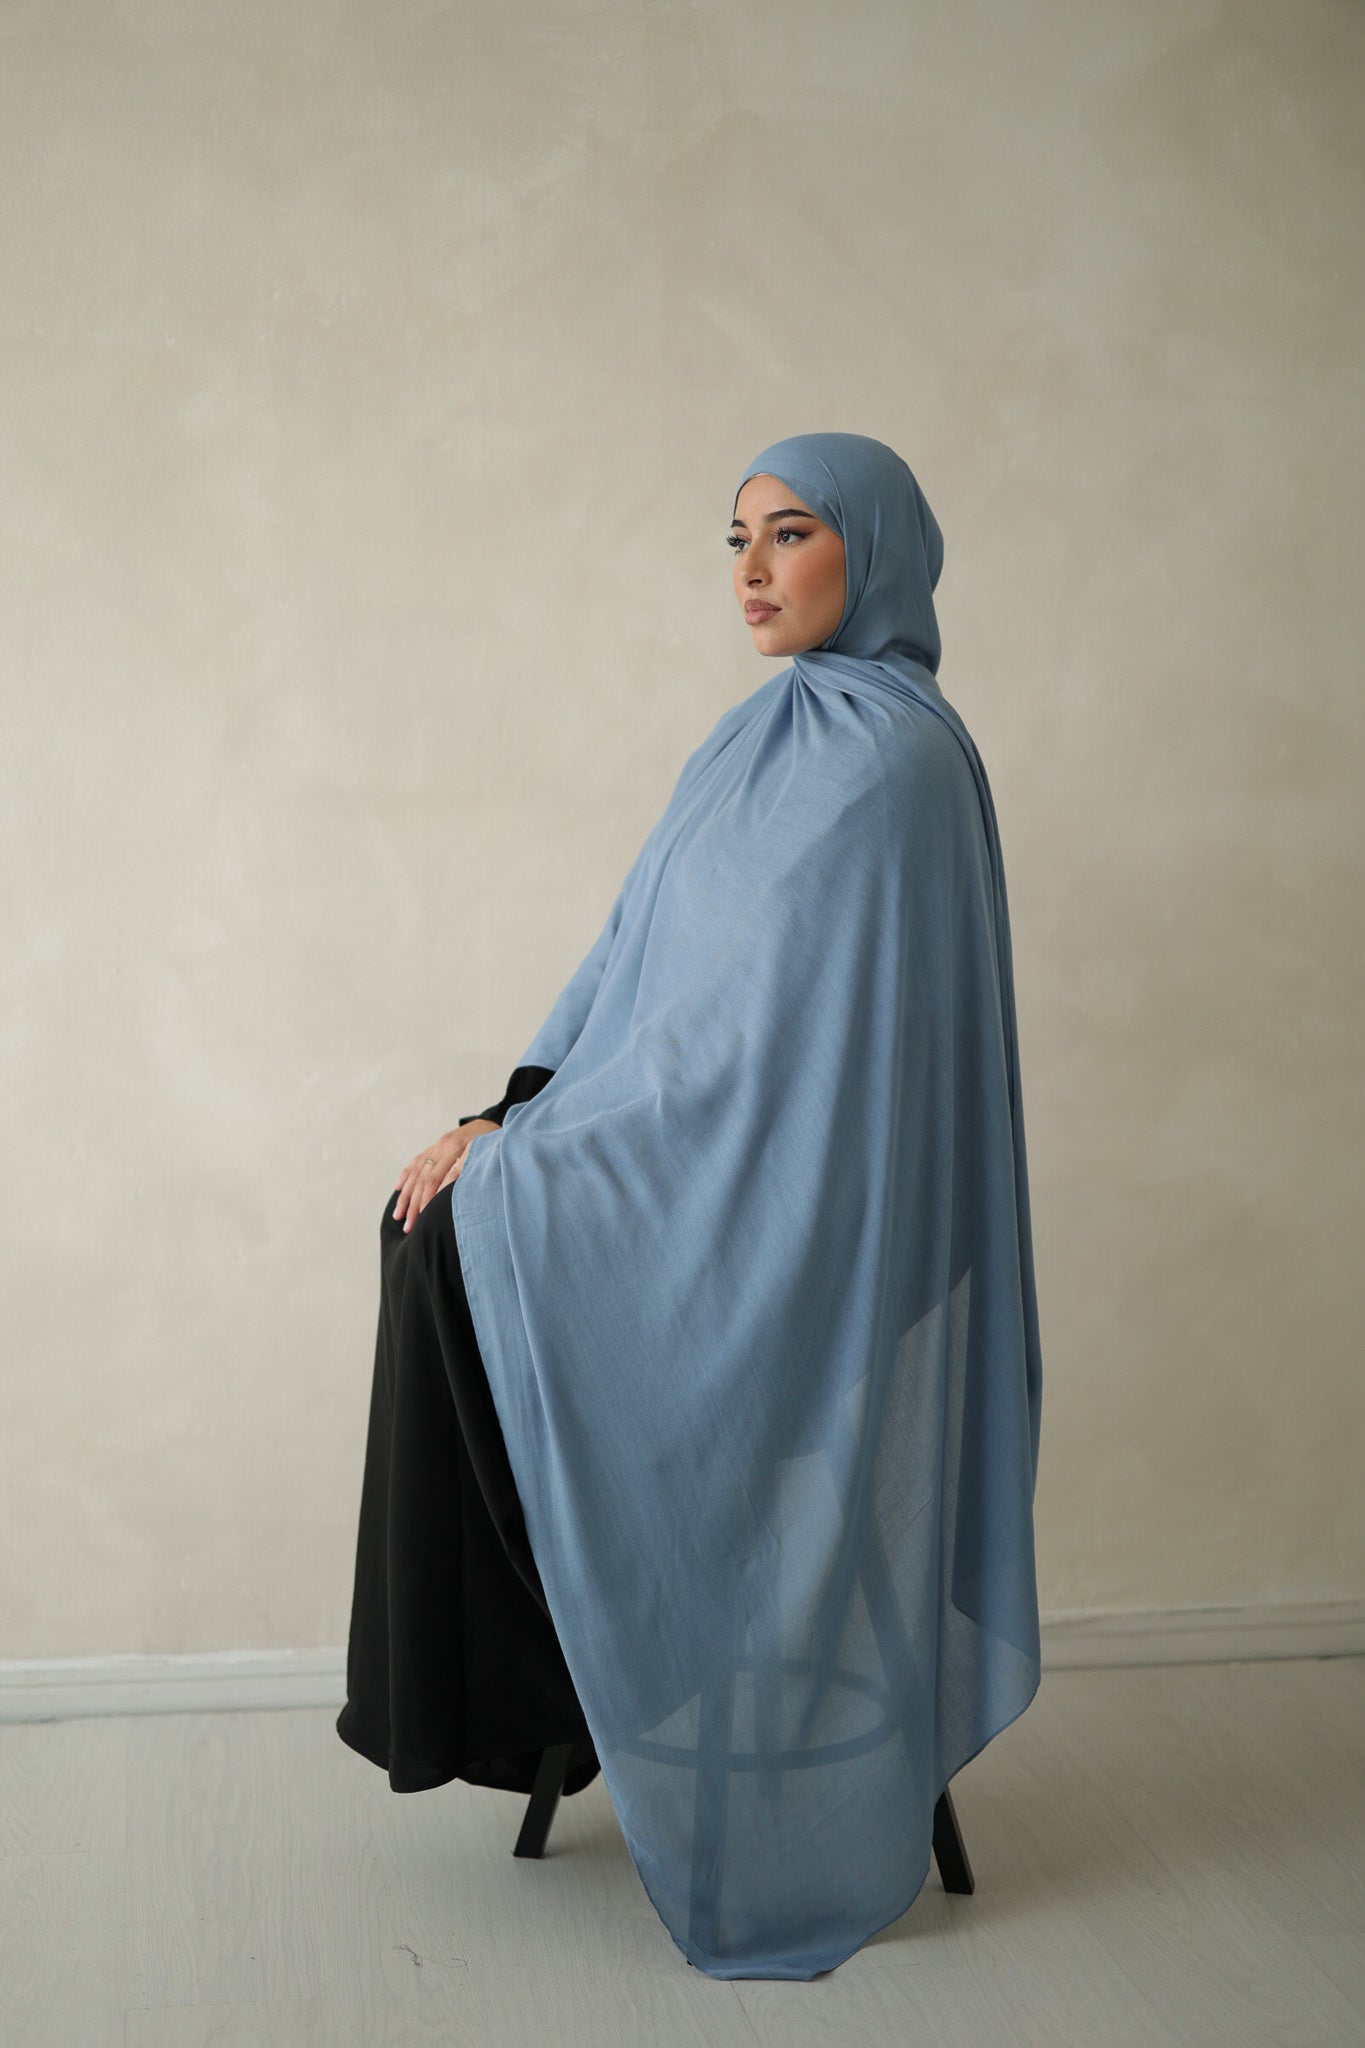 Modal Hijab - HAWAA Clothing